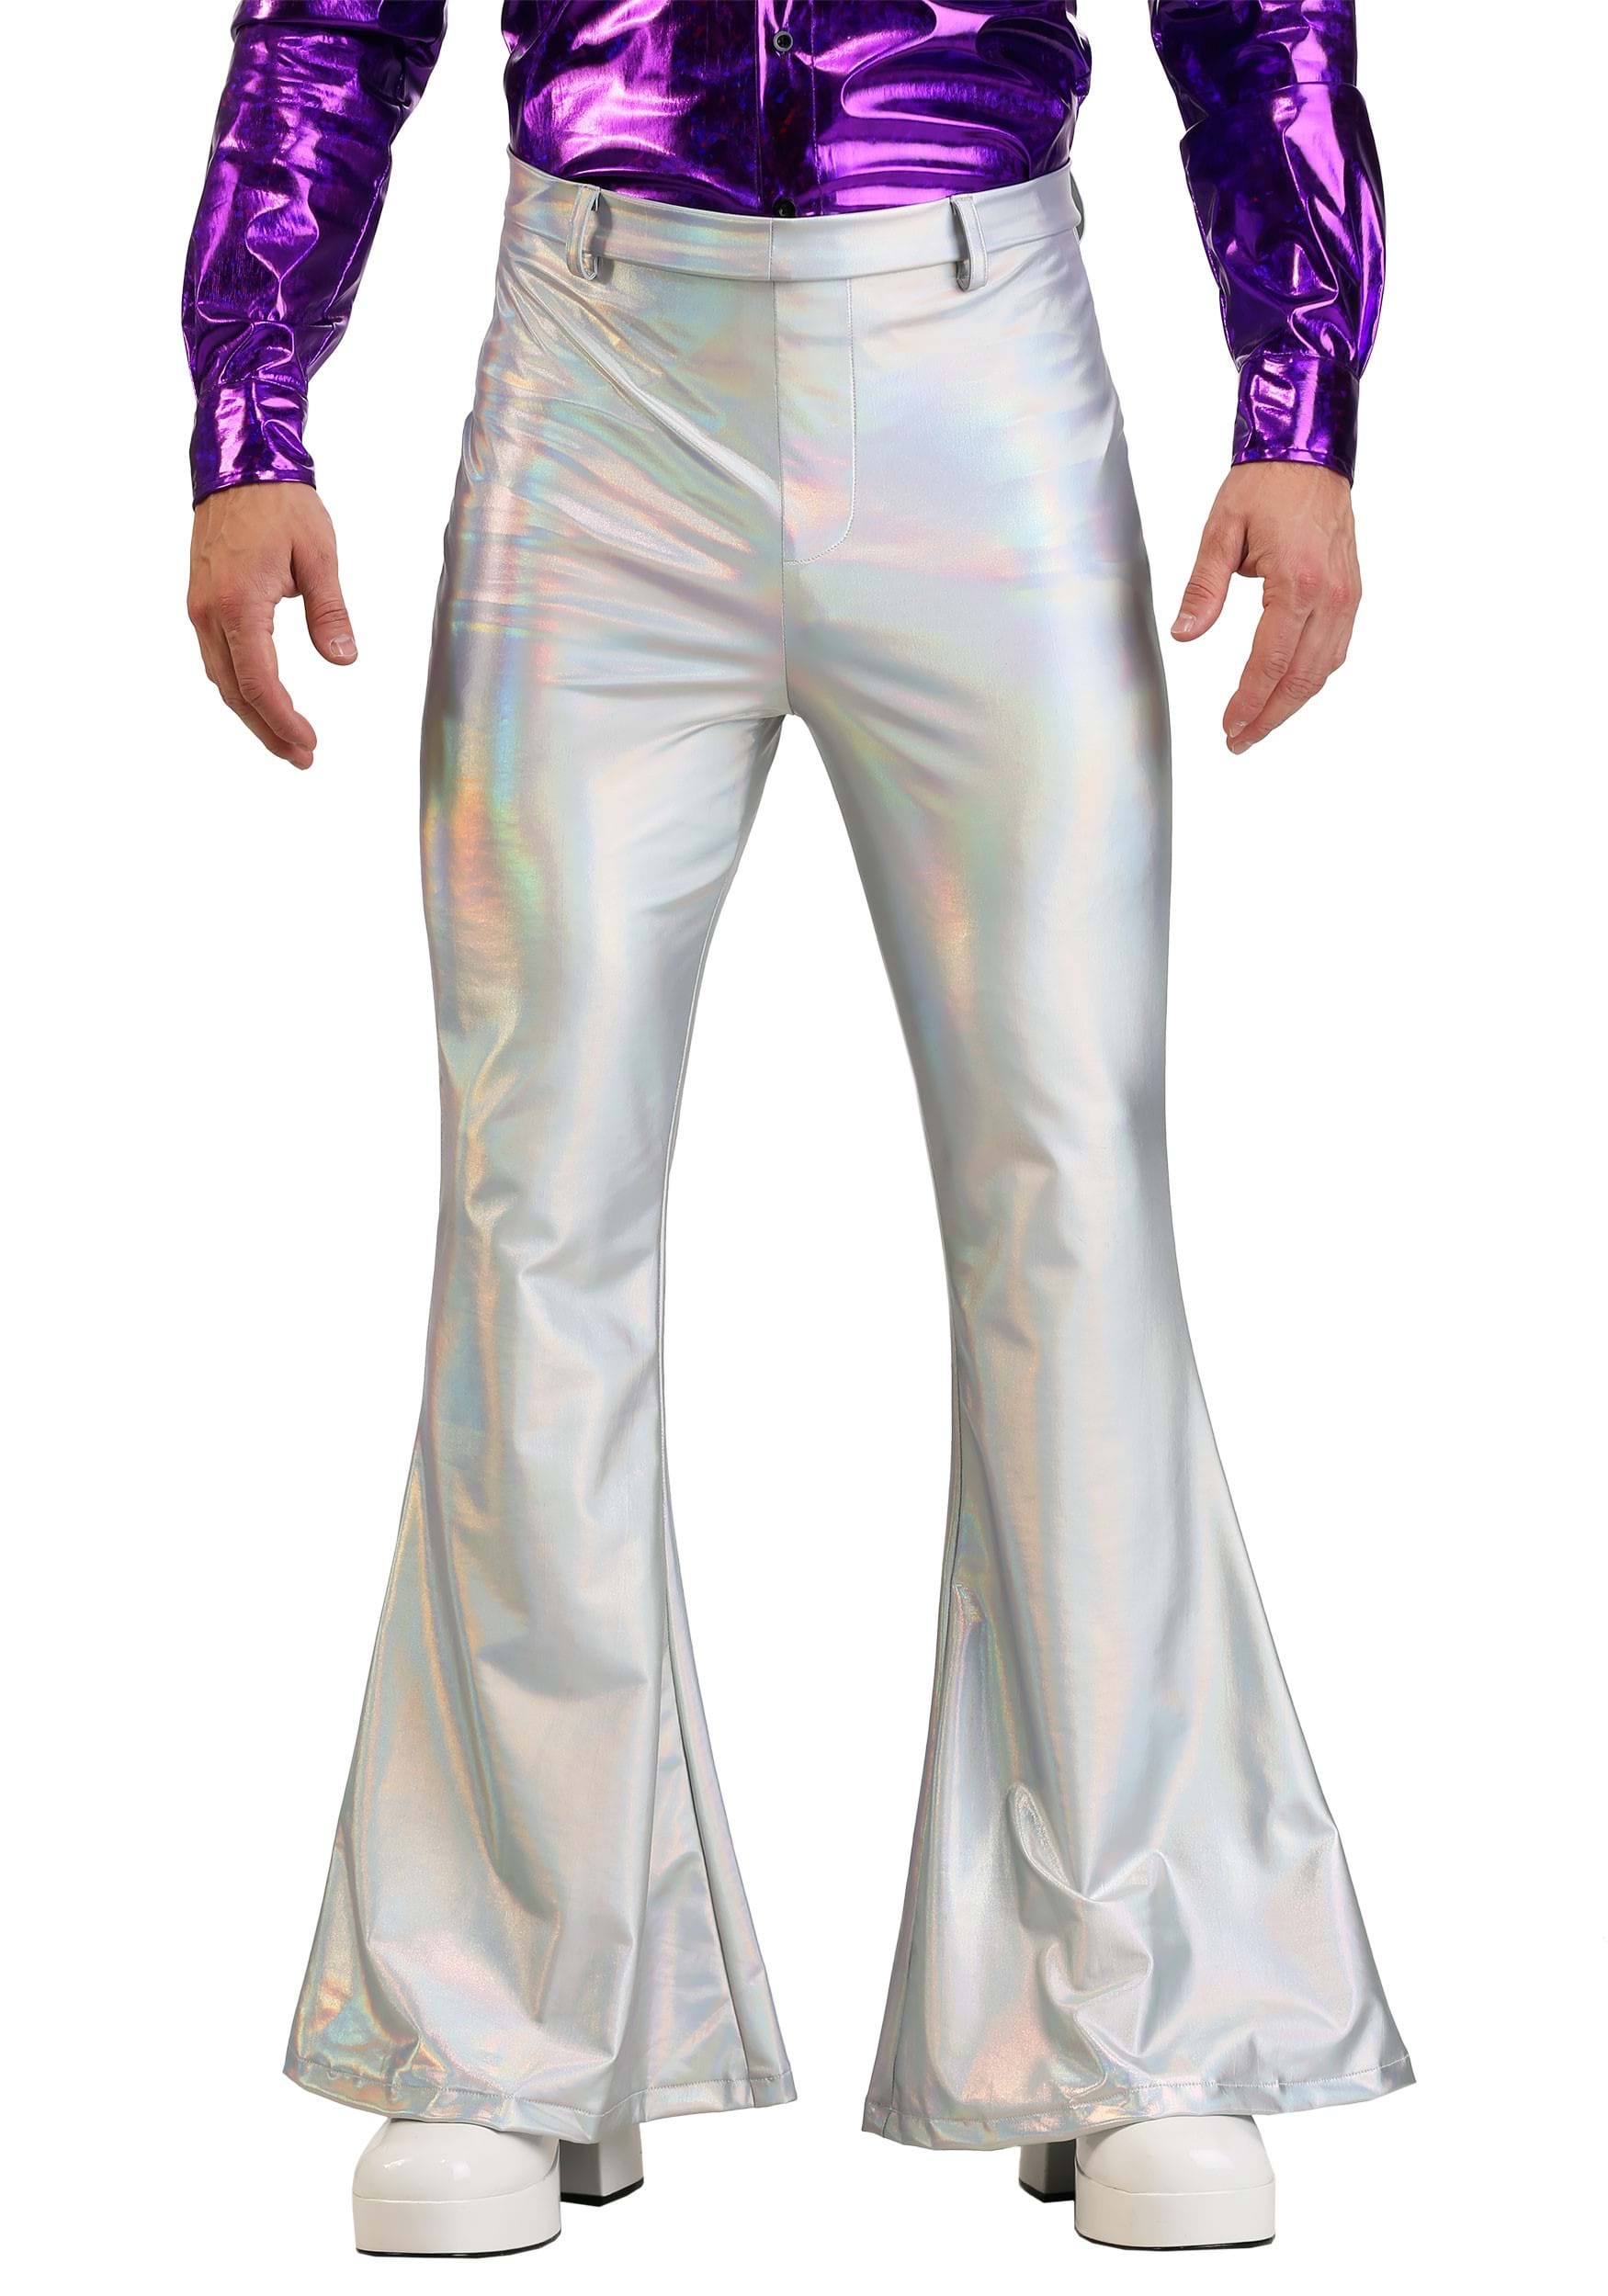 DISCO PANTS  Disco pants outfit, Disco pants, Disco